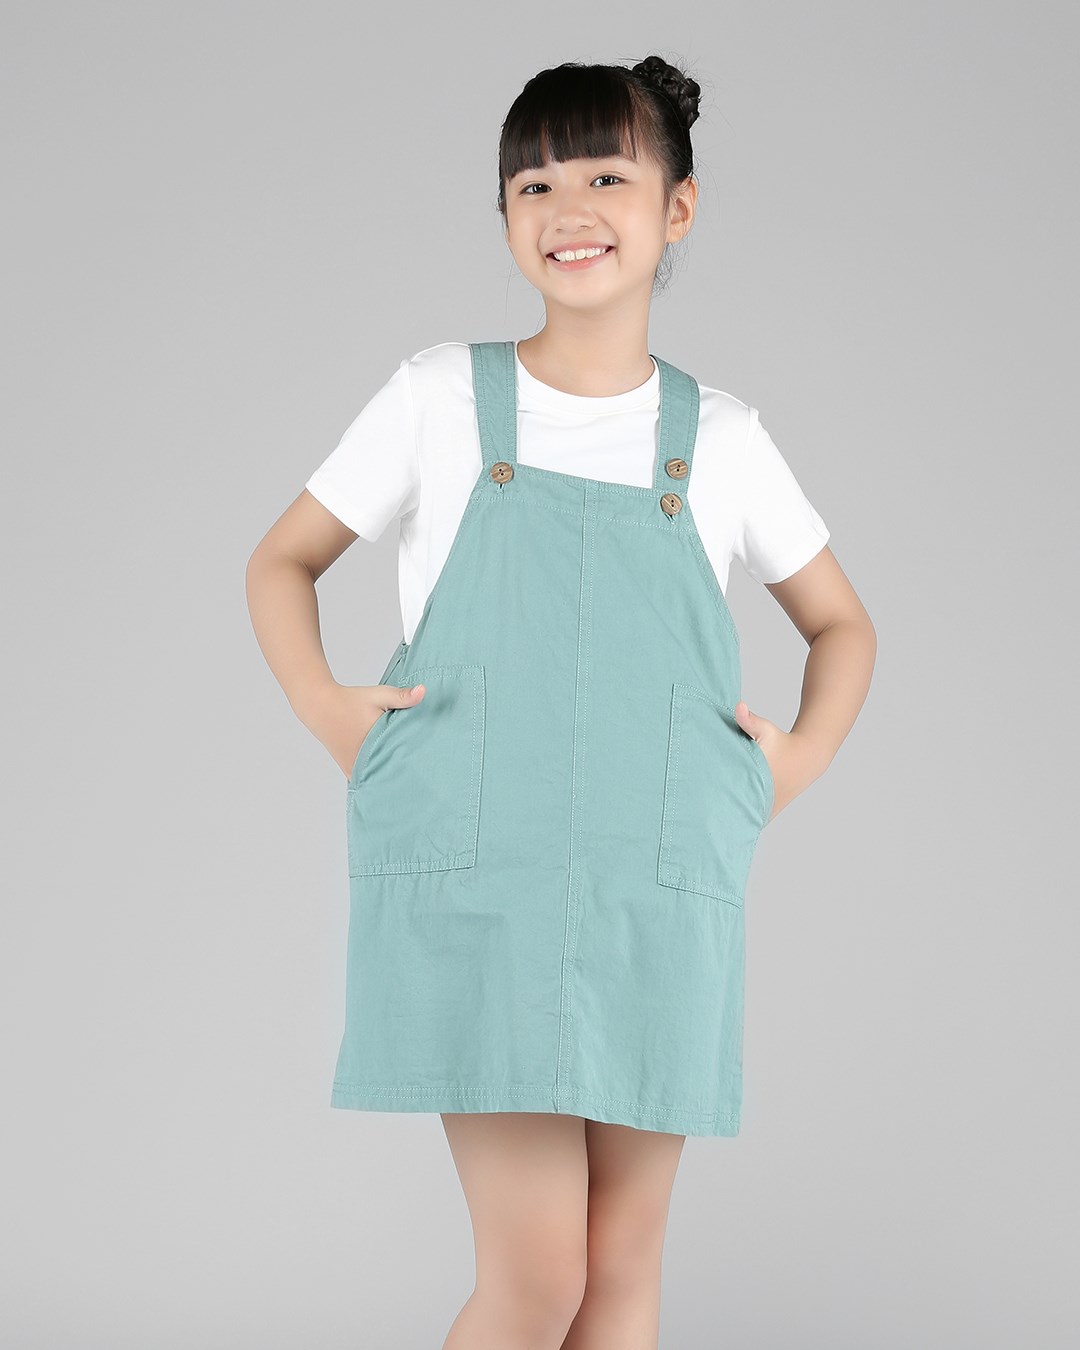 Đầm Trẻ Em Đẹp, Váy Xinh Cao Cấp Cho Bé Gái TpHCM Giá Tốt | moby.com.vn